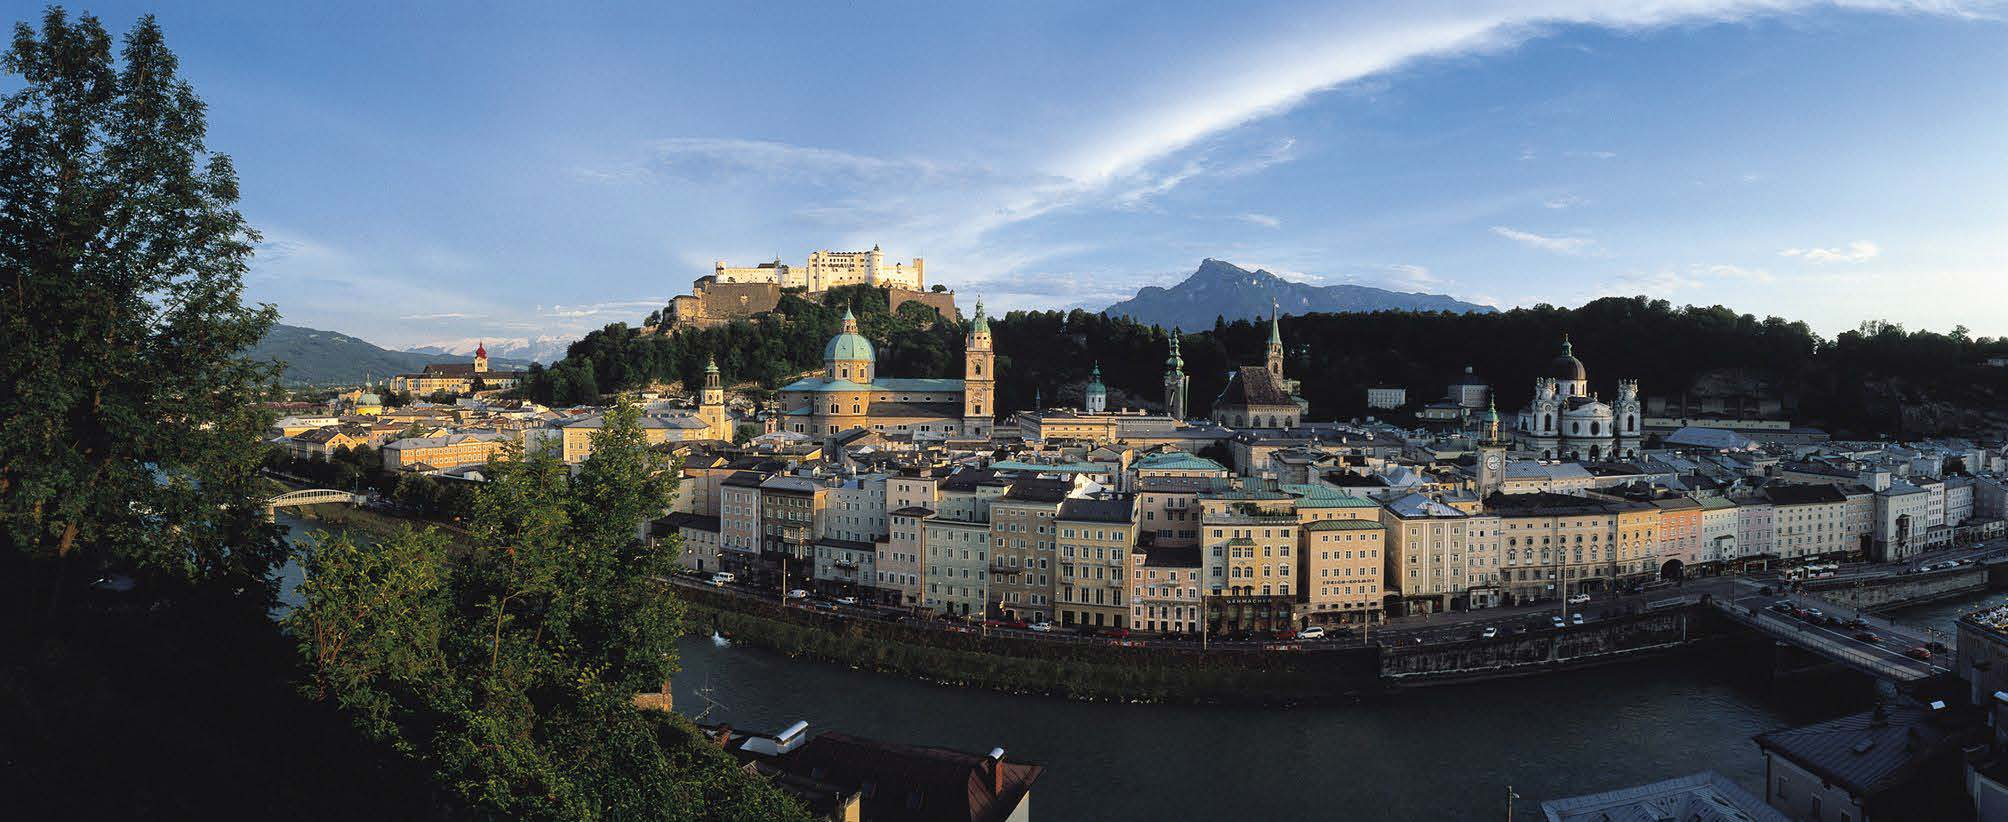 Salzburg Die